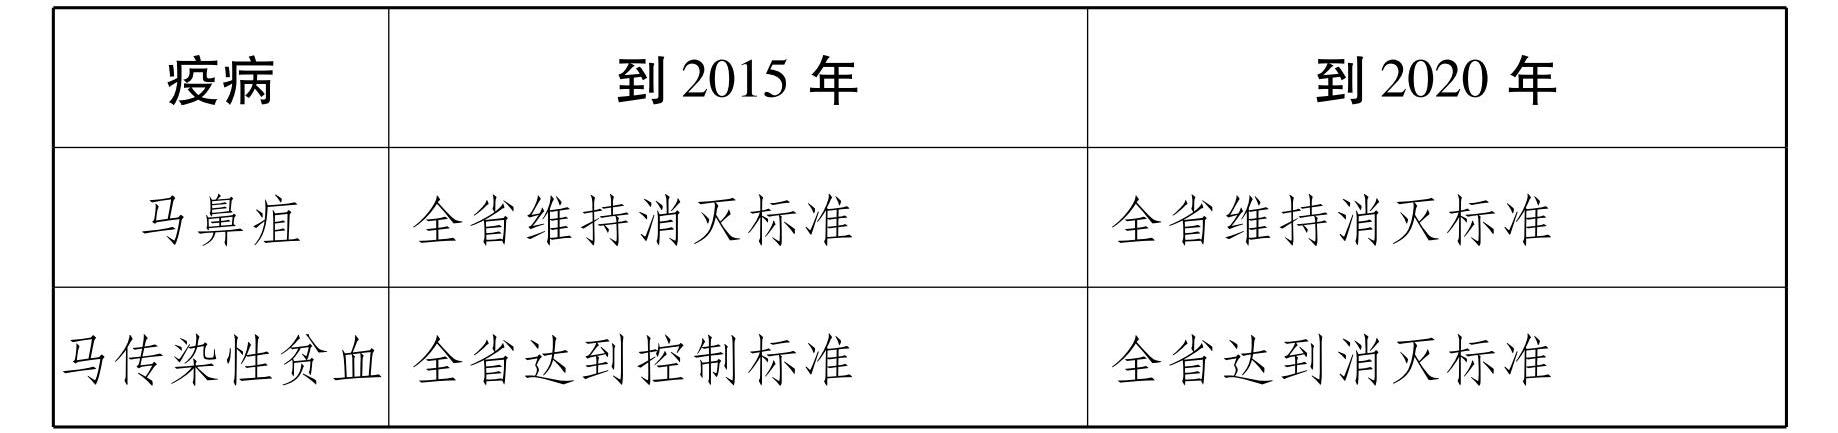 云南省人民政府办公厅关于印发云南省中长期动物疫病防治规划 （2014—2020年） 的通知_14.jpg